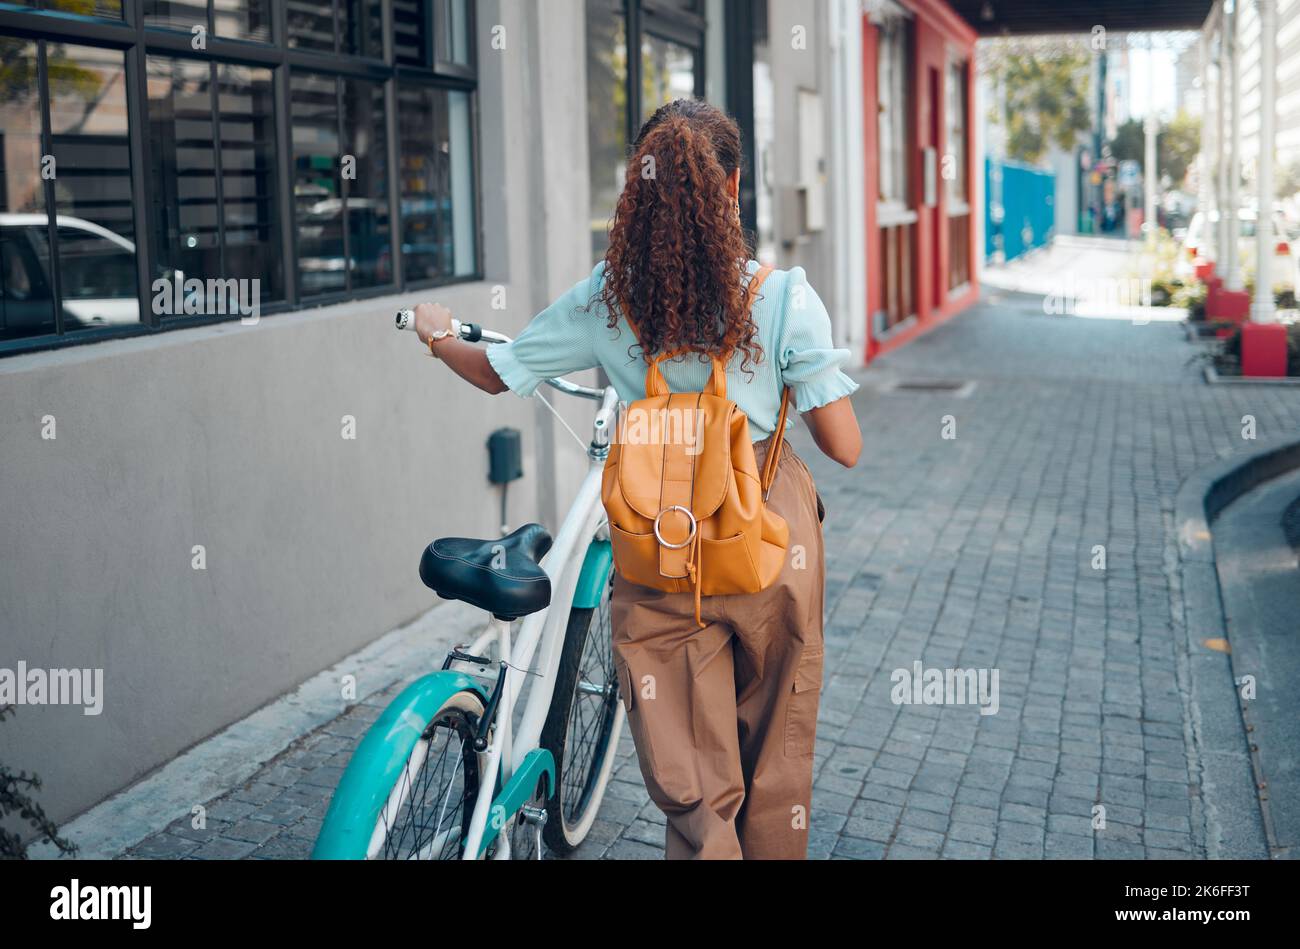 Frau, Fahrrad oder Stadt reisen mit umweltfreundlichem, nachhaltigem CO2-Fußabdruck oder einem zukünftigen grünen Energietransport. Mode Student, cool und Stockfoto